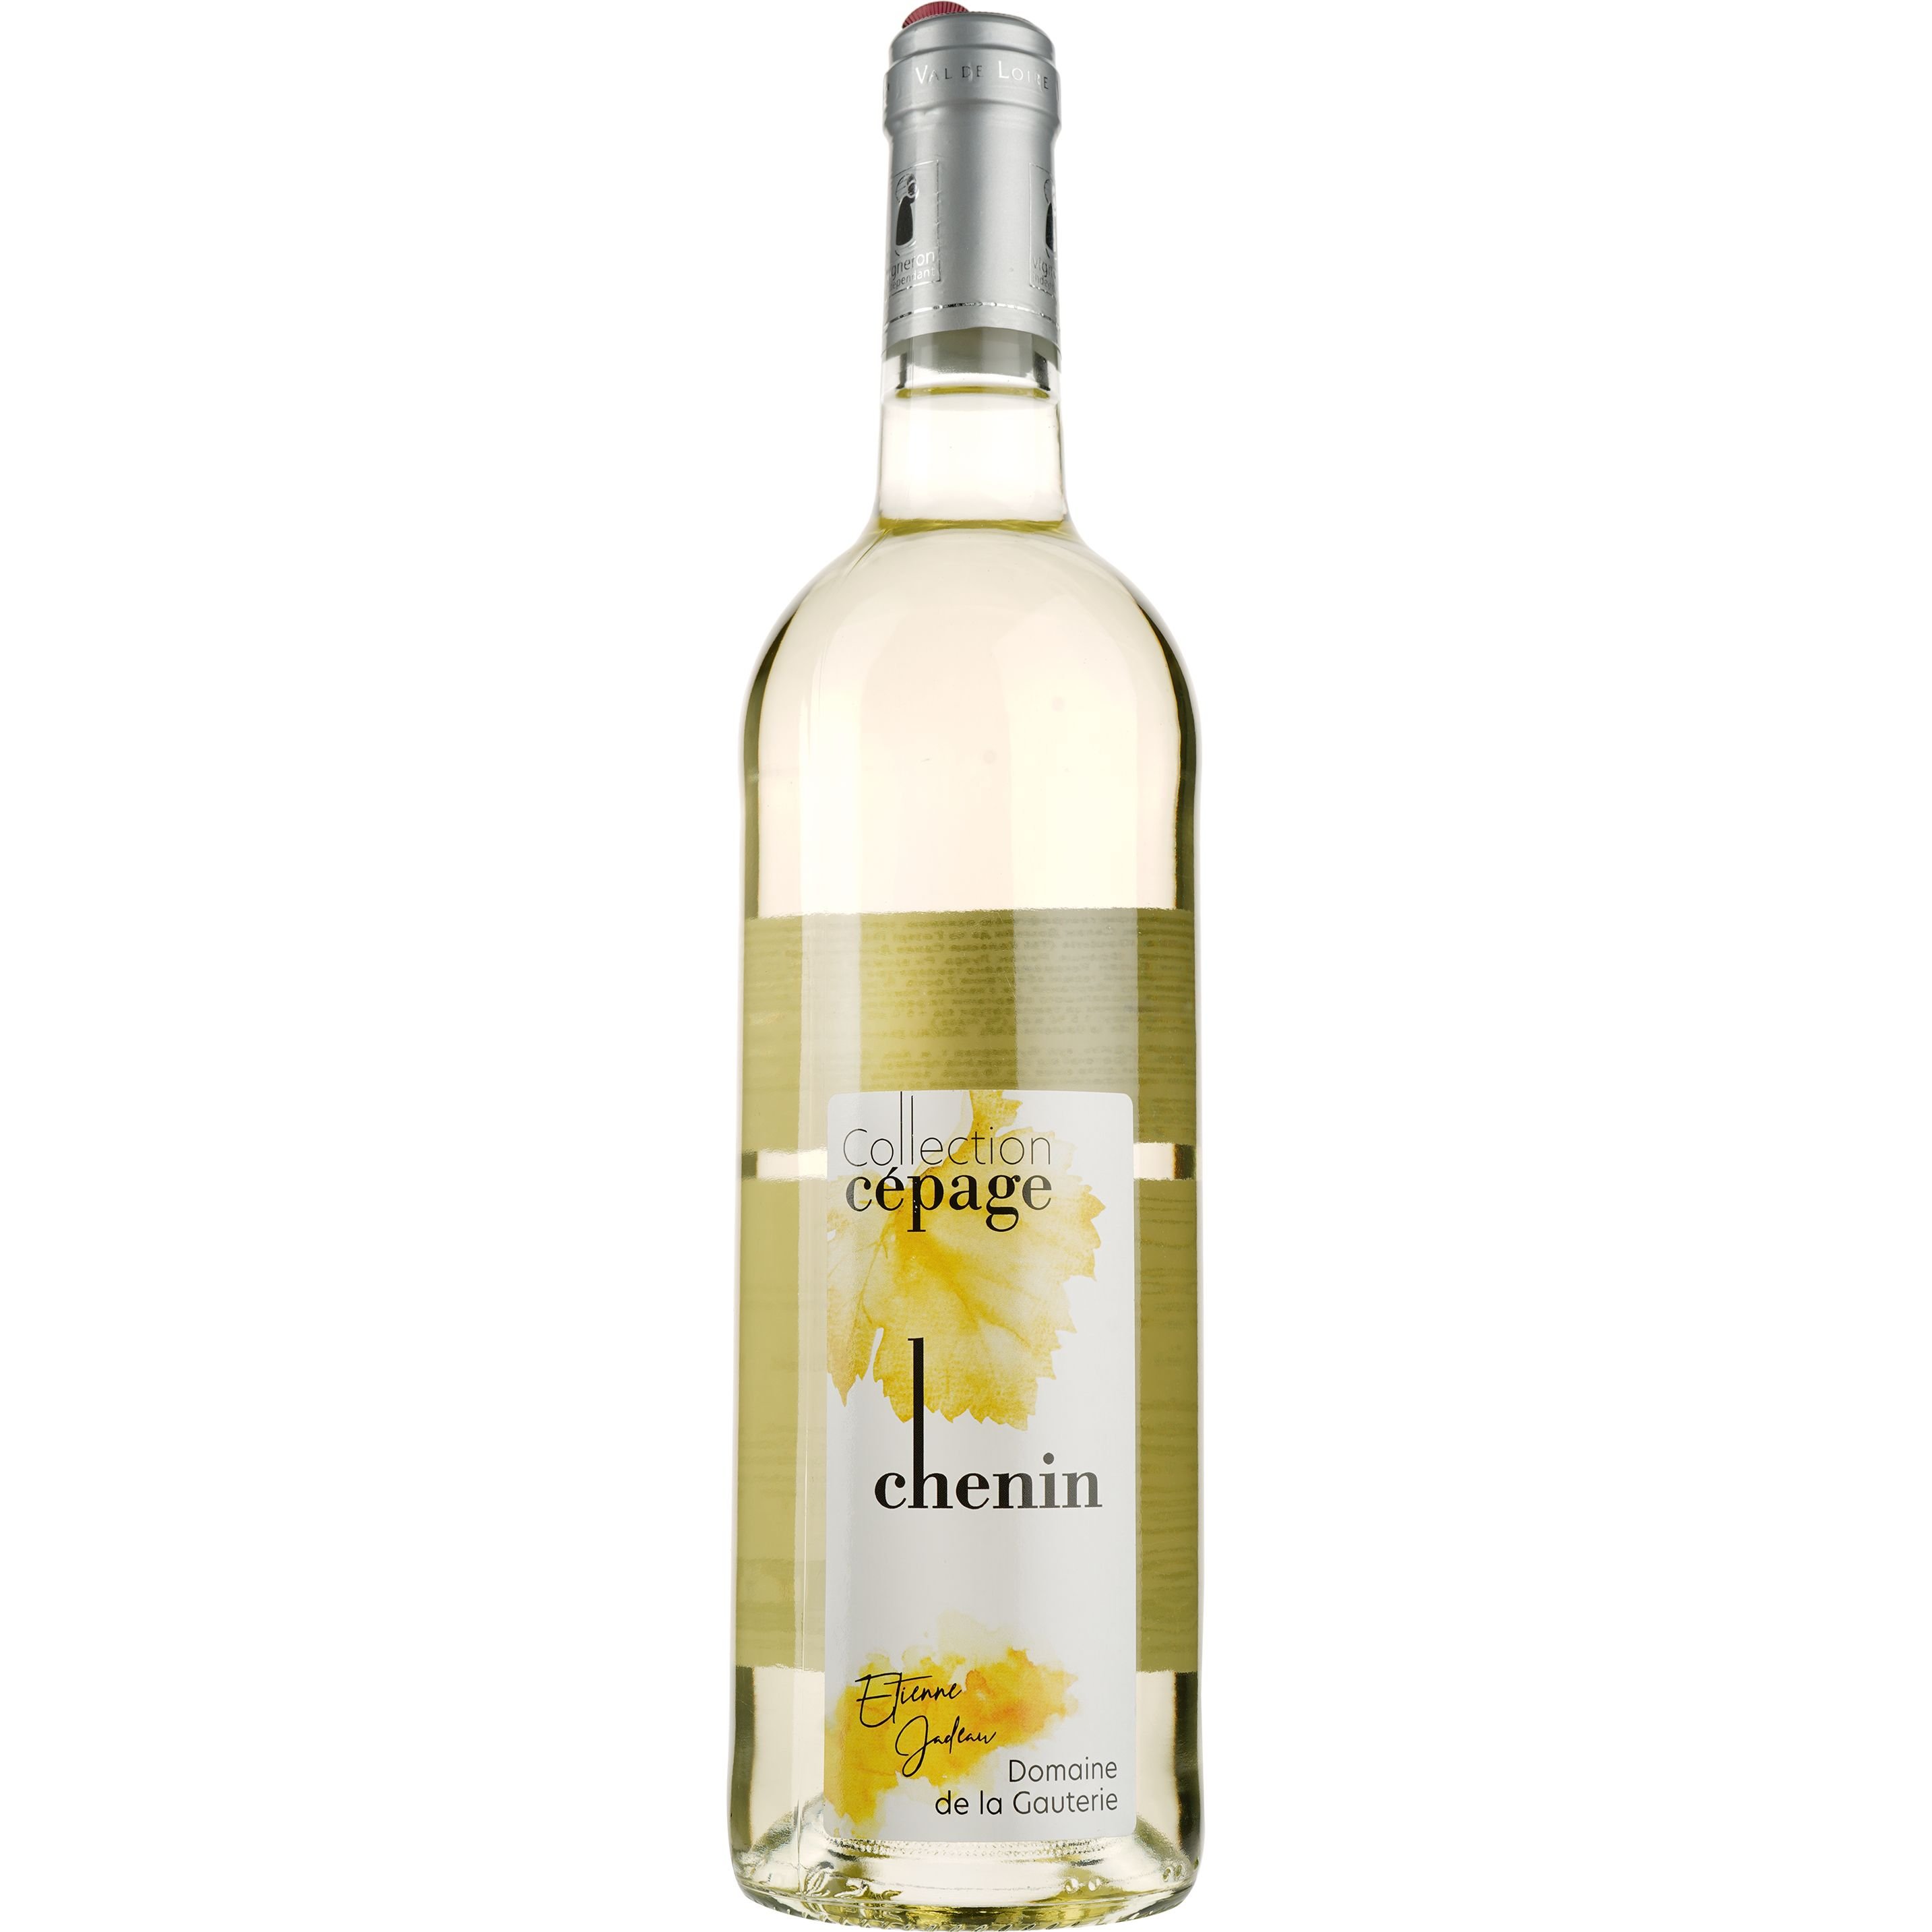 Вино Domaine de la Gauterie Chenin Collection Cepage Val de Loire IGP, белое, полусухое, 0,75 л - фото 1